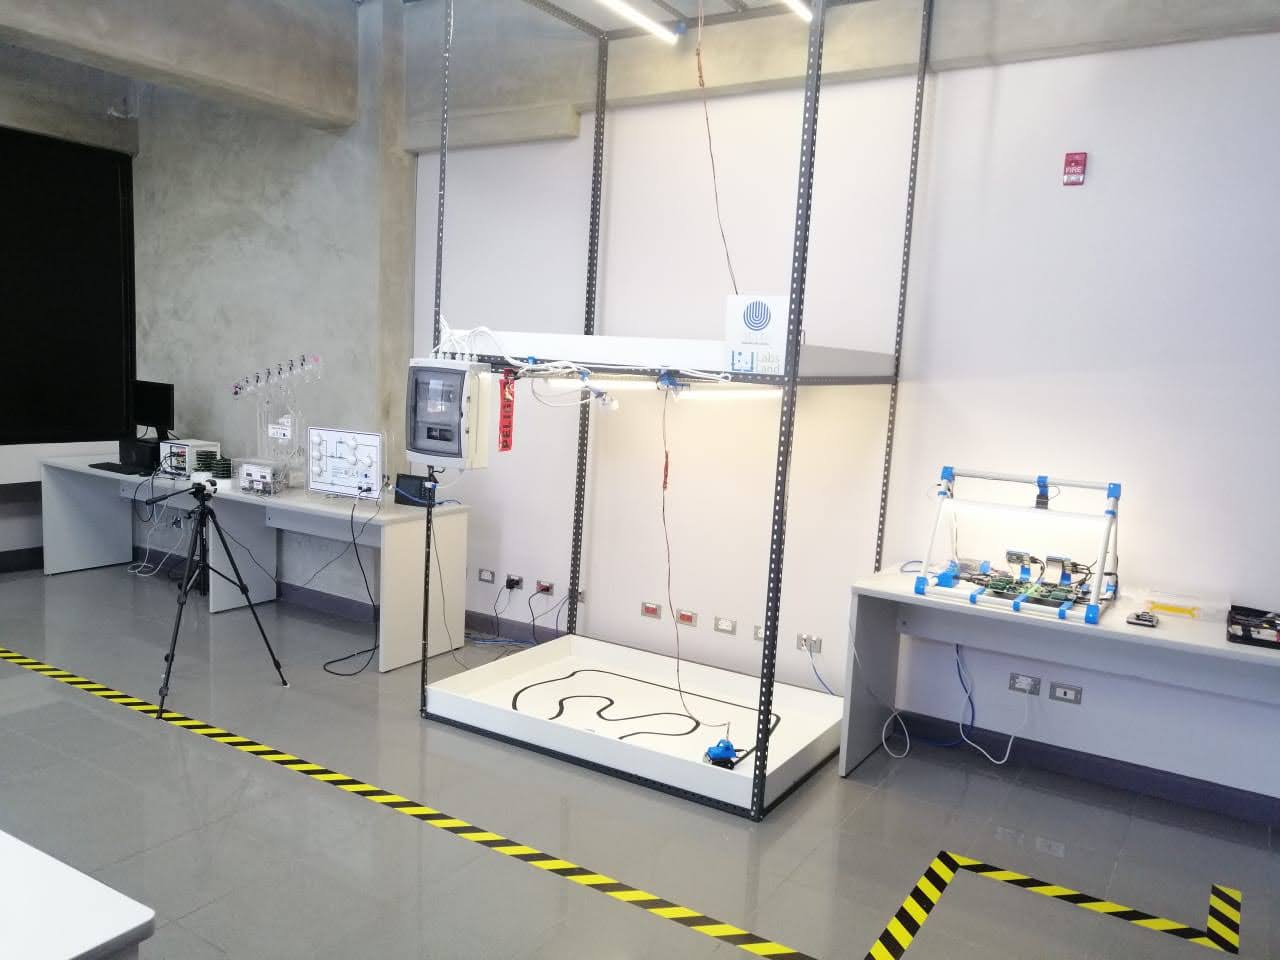 Despliegue de laboratorios remotos de Arduino y de Robótica en la Universidad Estatal a Distancia (UNED) de Costa Rica